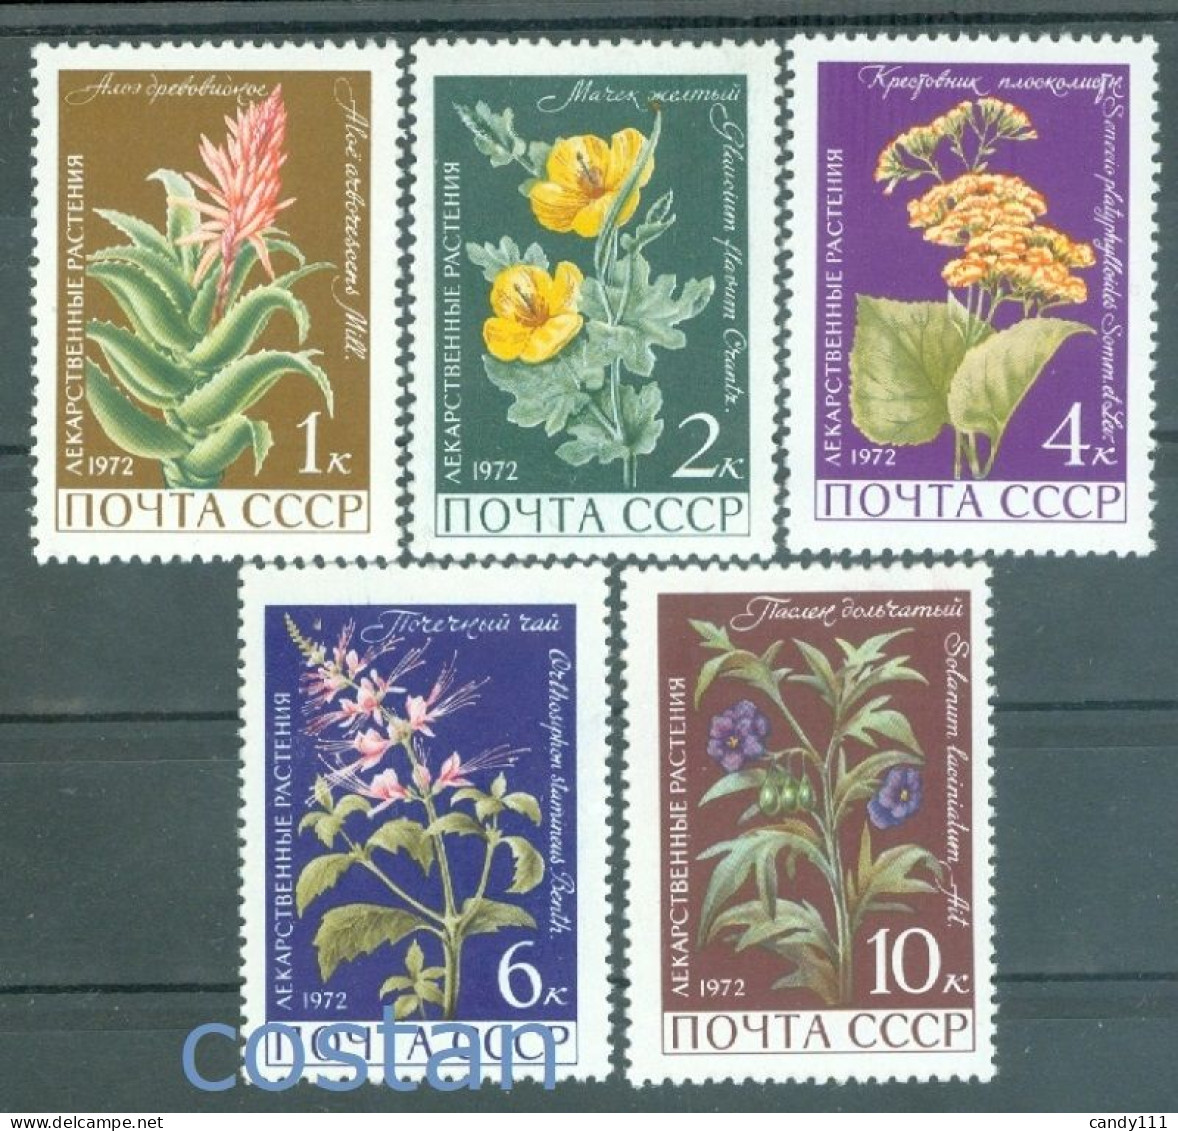 1972 Medicinal Plants,krantz Aloe,sea Poppy,poroporo,Orthosiphon,Russia,3988,MNH - Plantes Médicinales